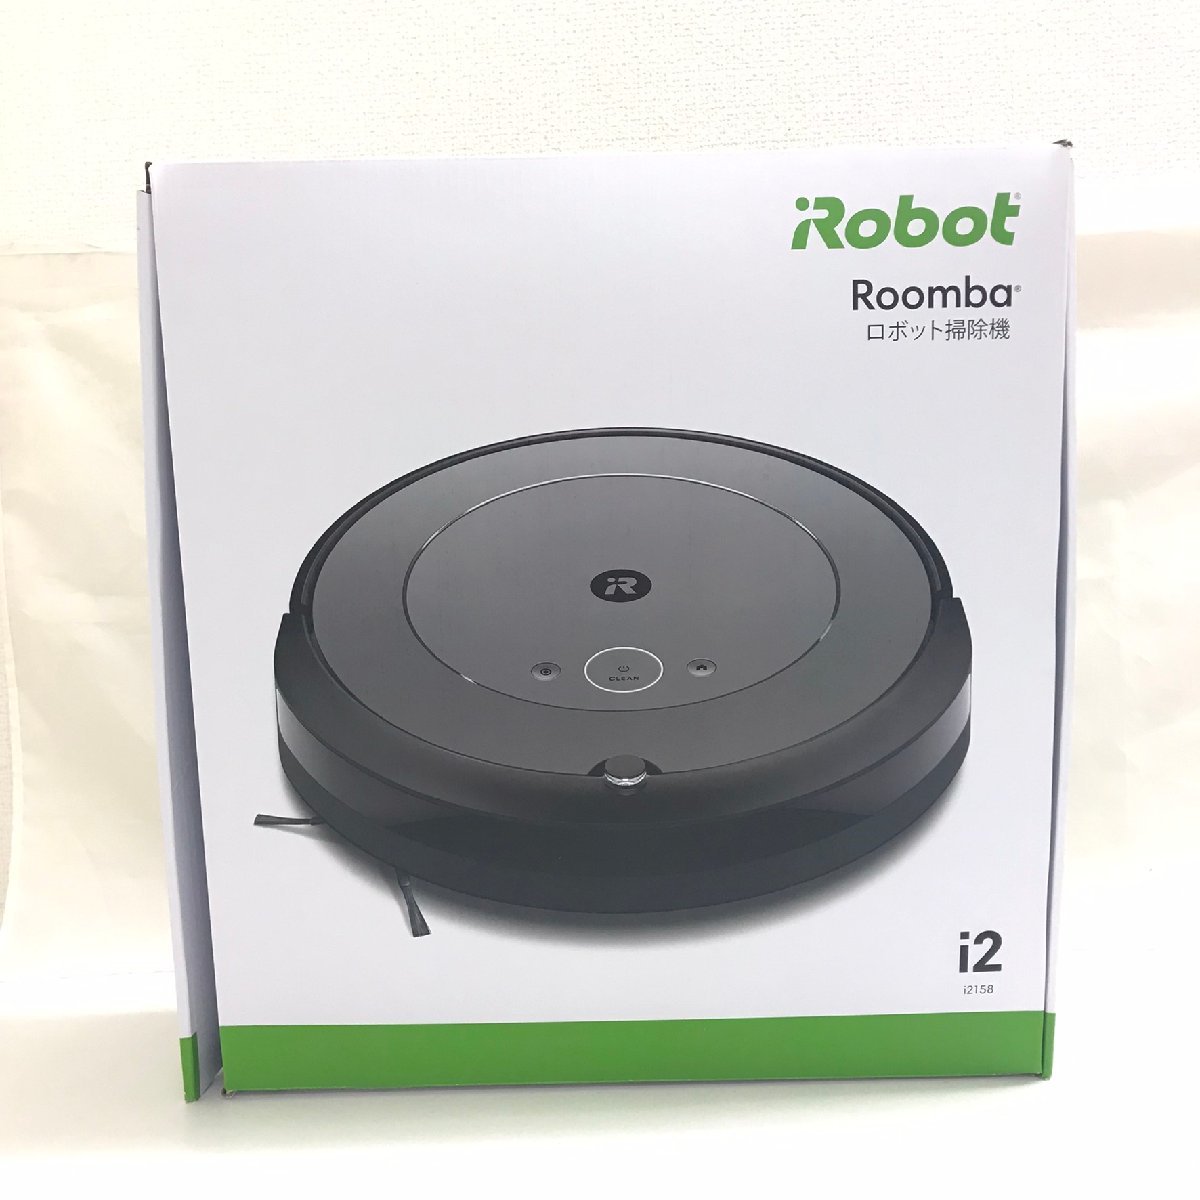 未使用未開封アイロボットiRobot ルンバi2 i2158 RVD-Y1 家電ロボット